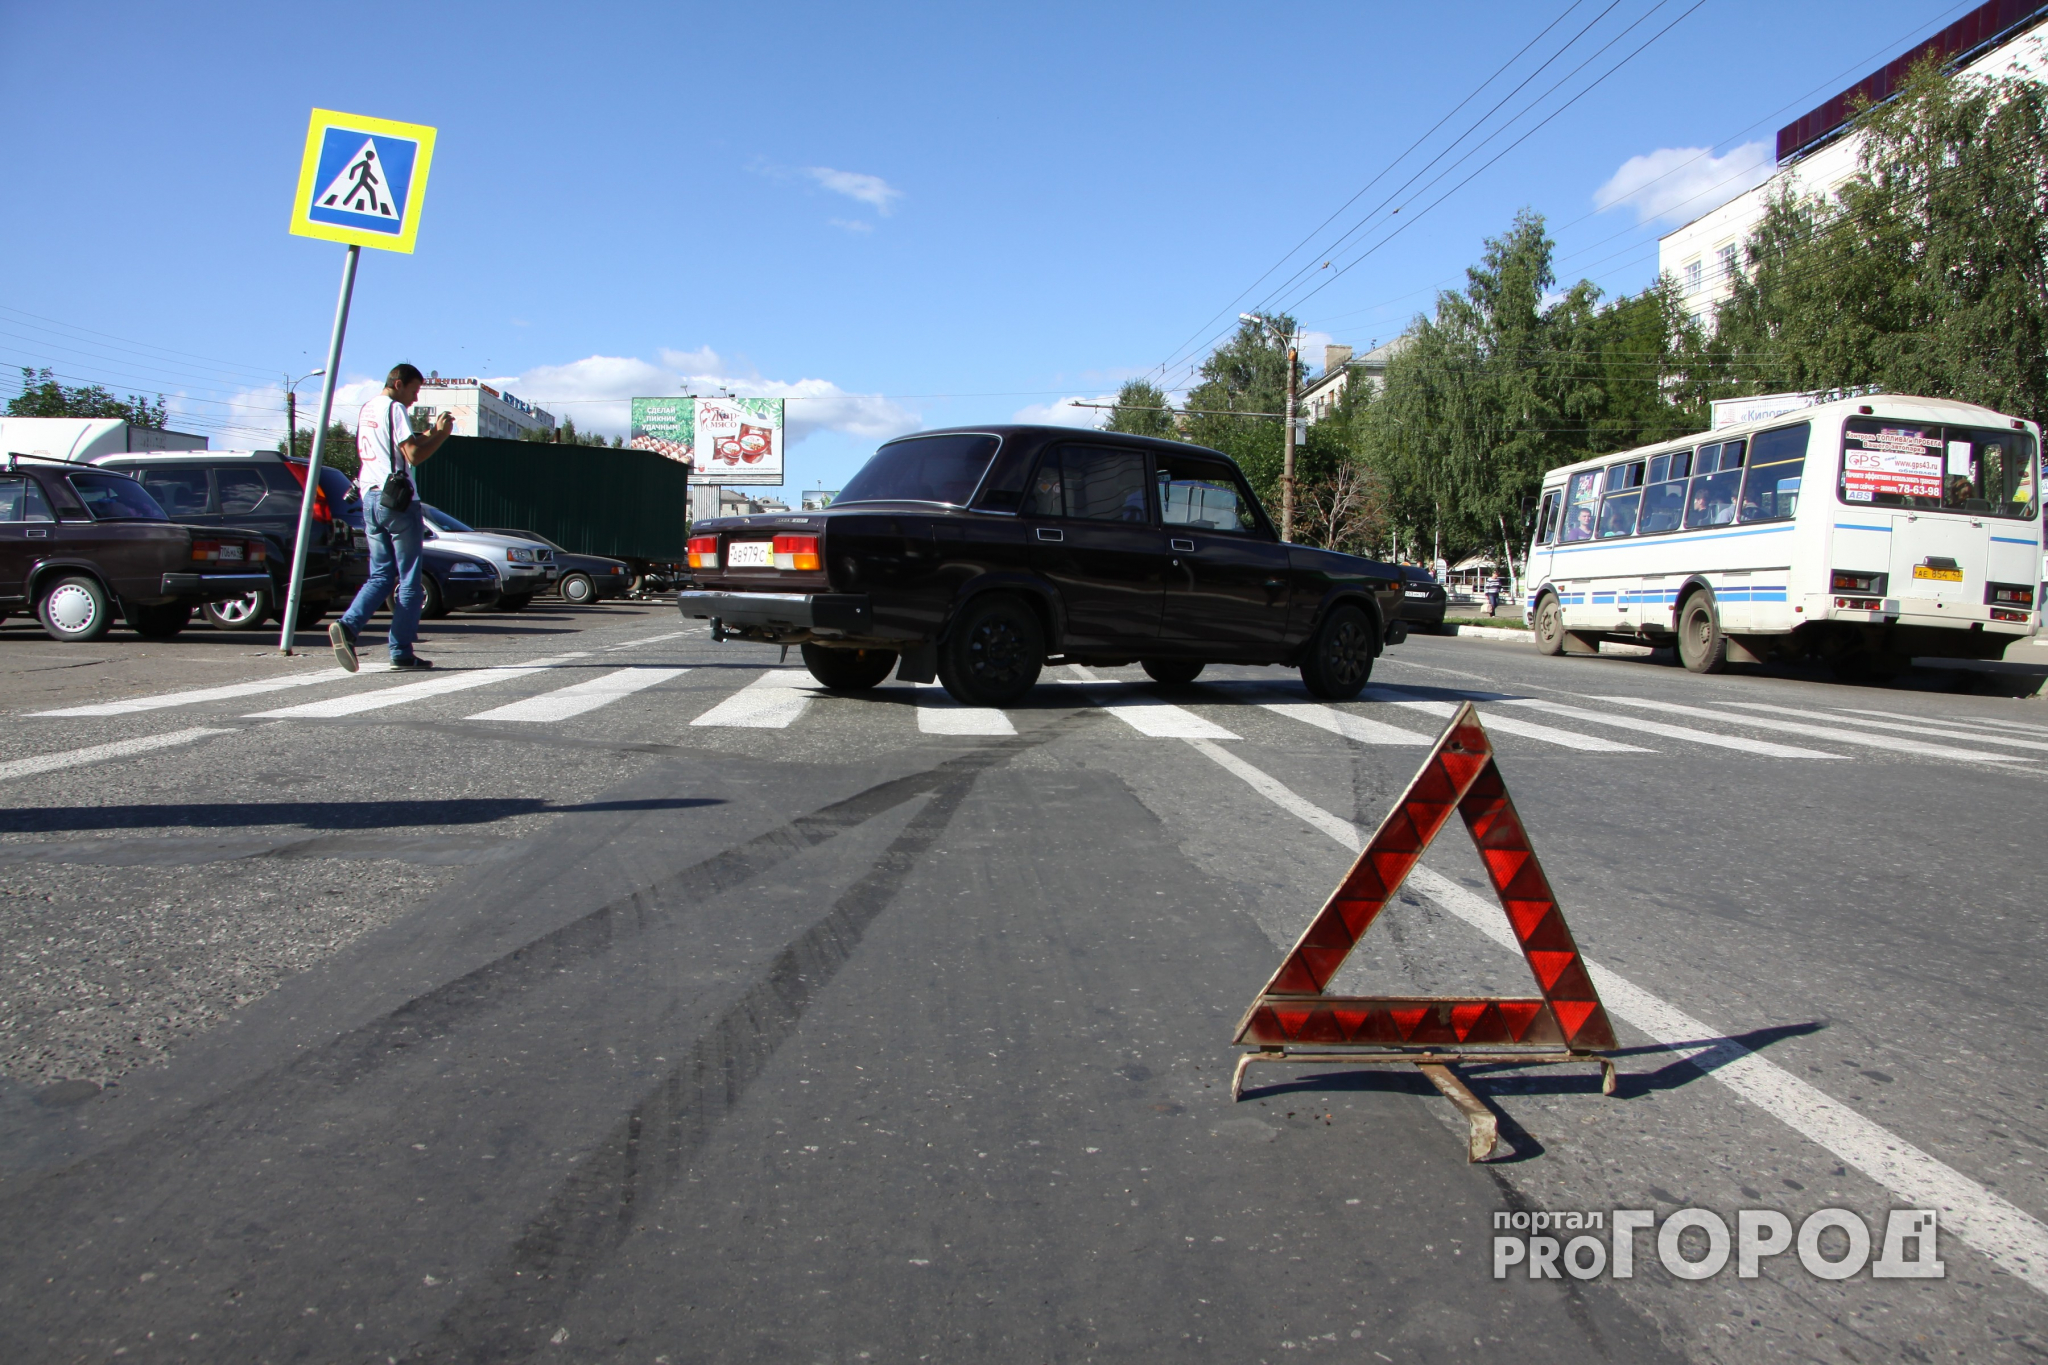 Под Ярославлем пьяный водитель без прав угробил двух пассажиров